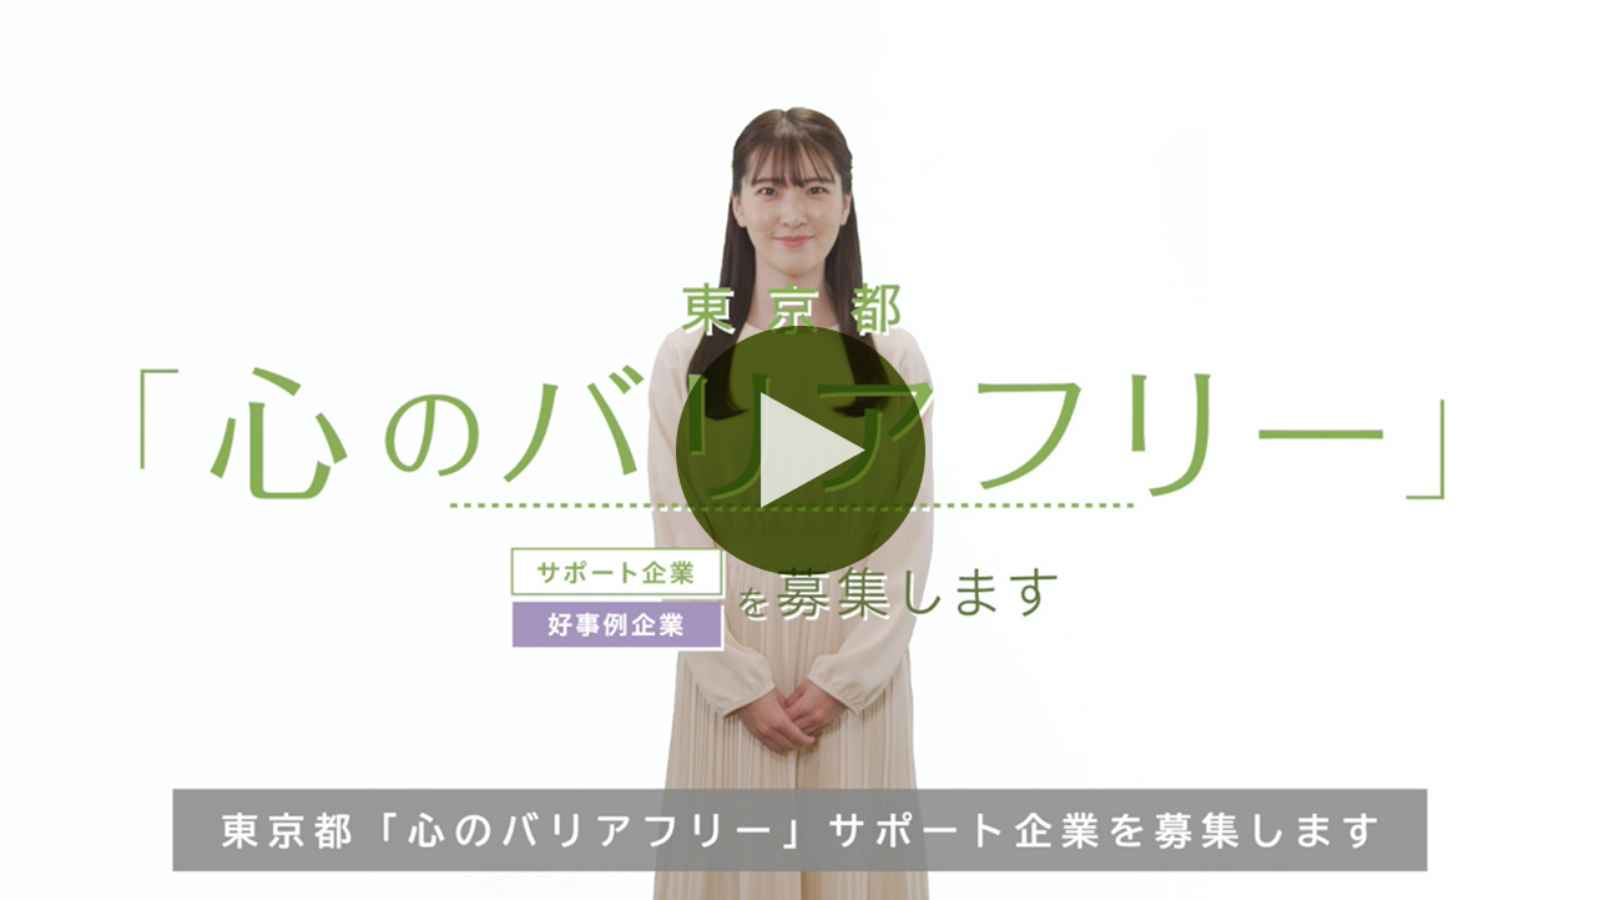 東京都「心のバリアフリー」サポート企業連携事業の動画